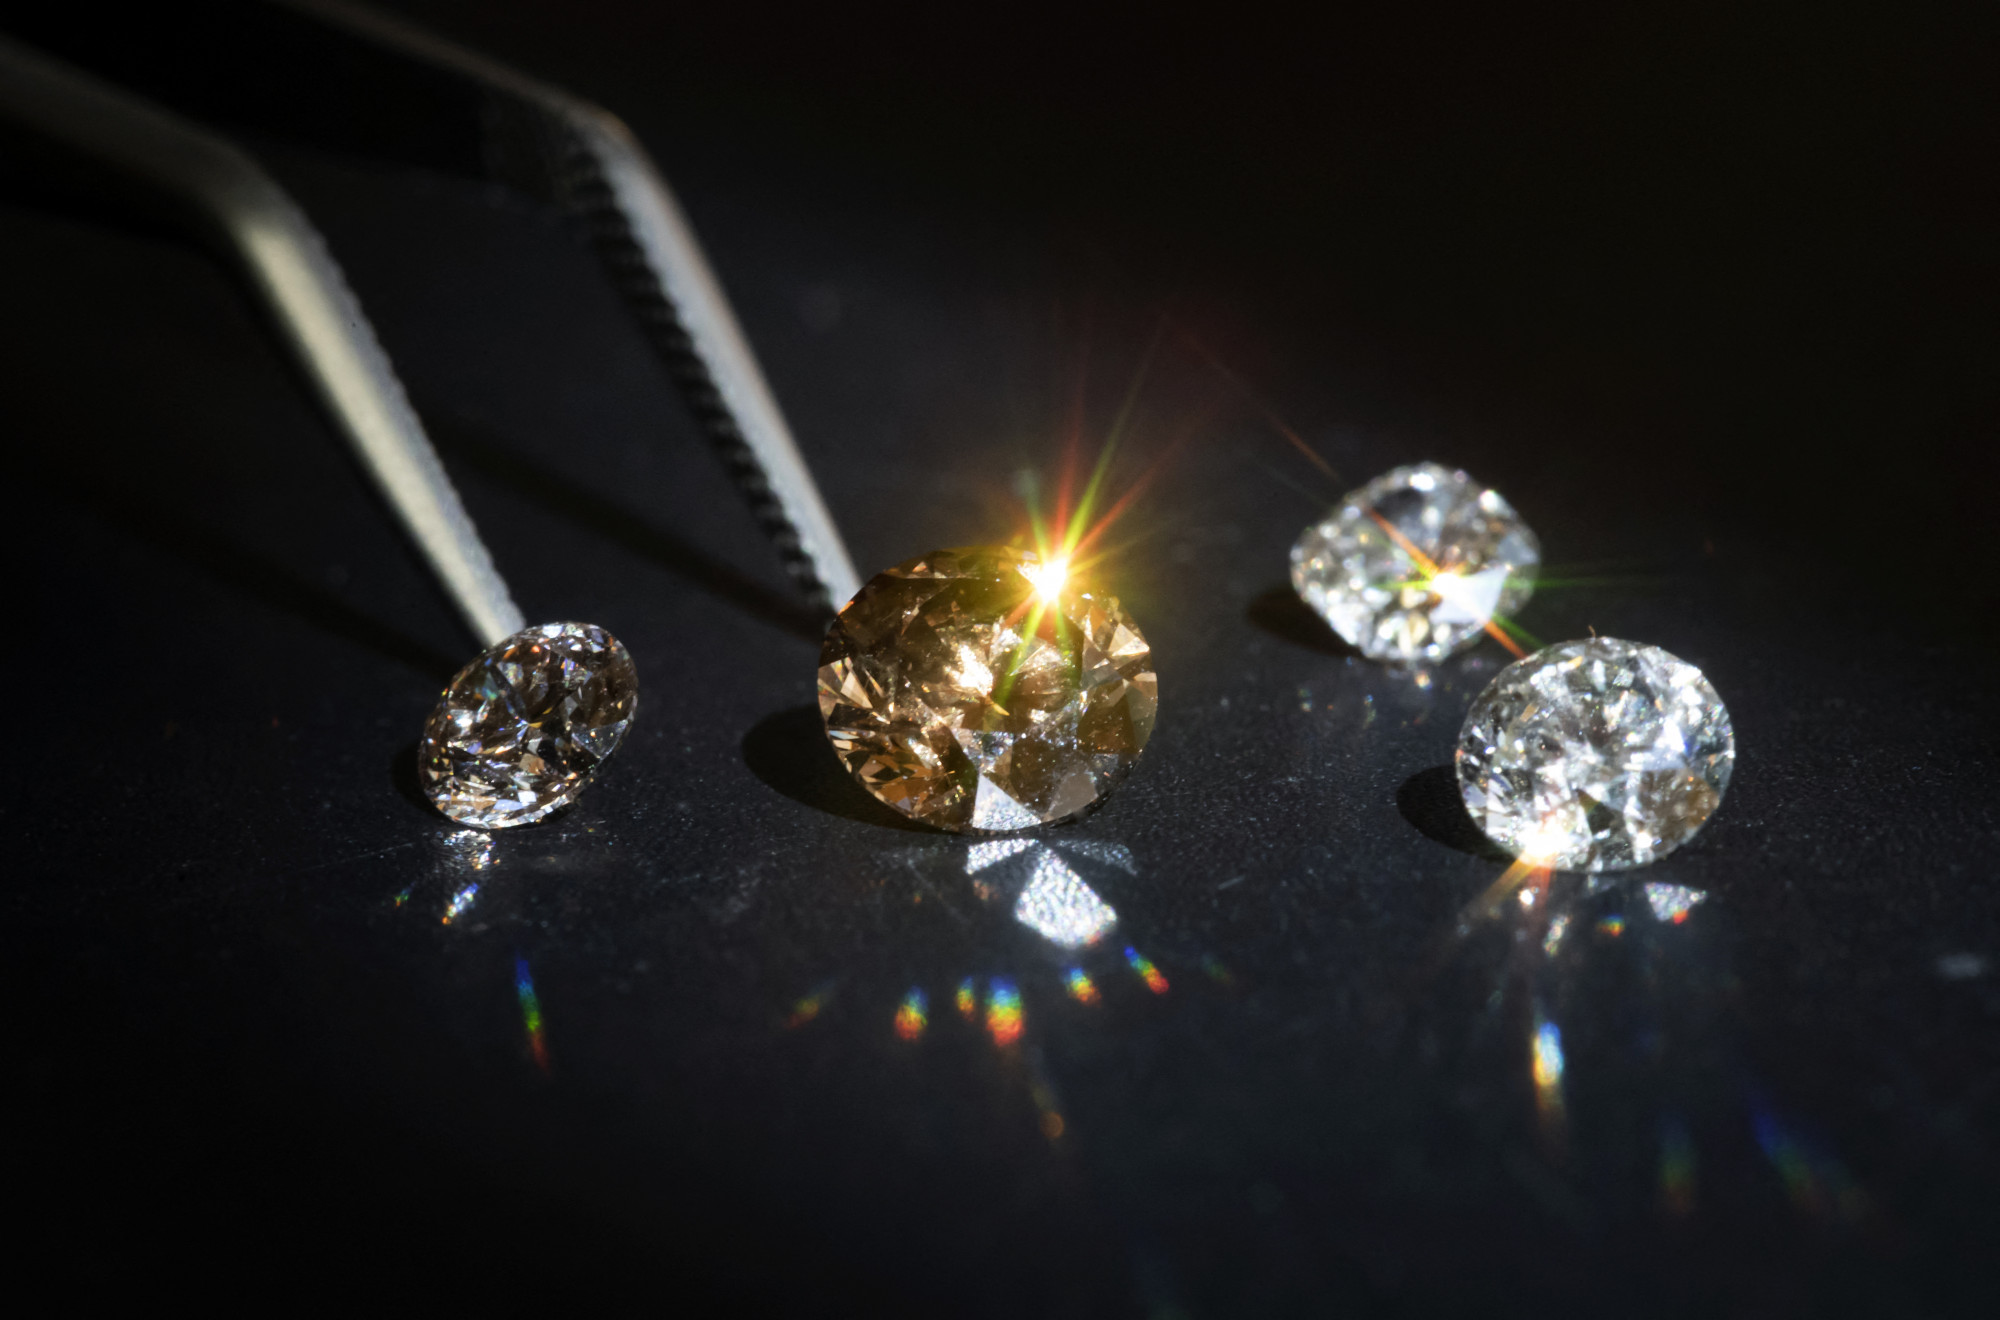 Kanyarban előzné a bányászott gyémántot a mesterséges, karambol lehet a vége